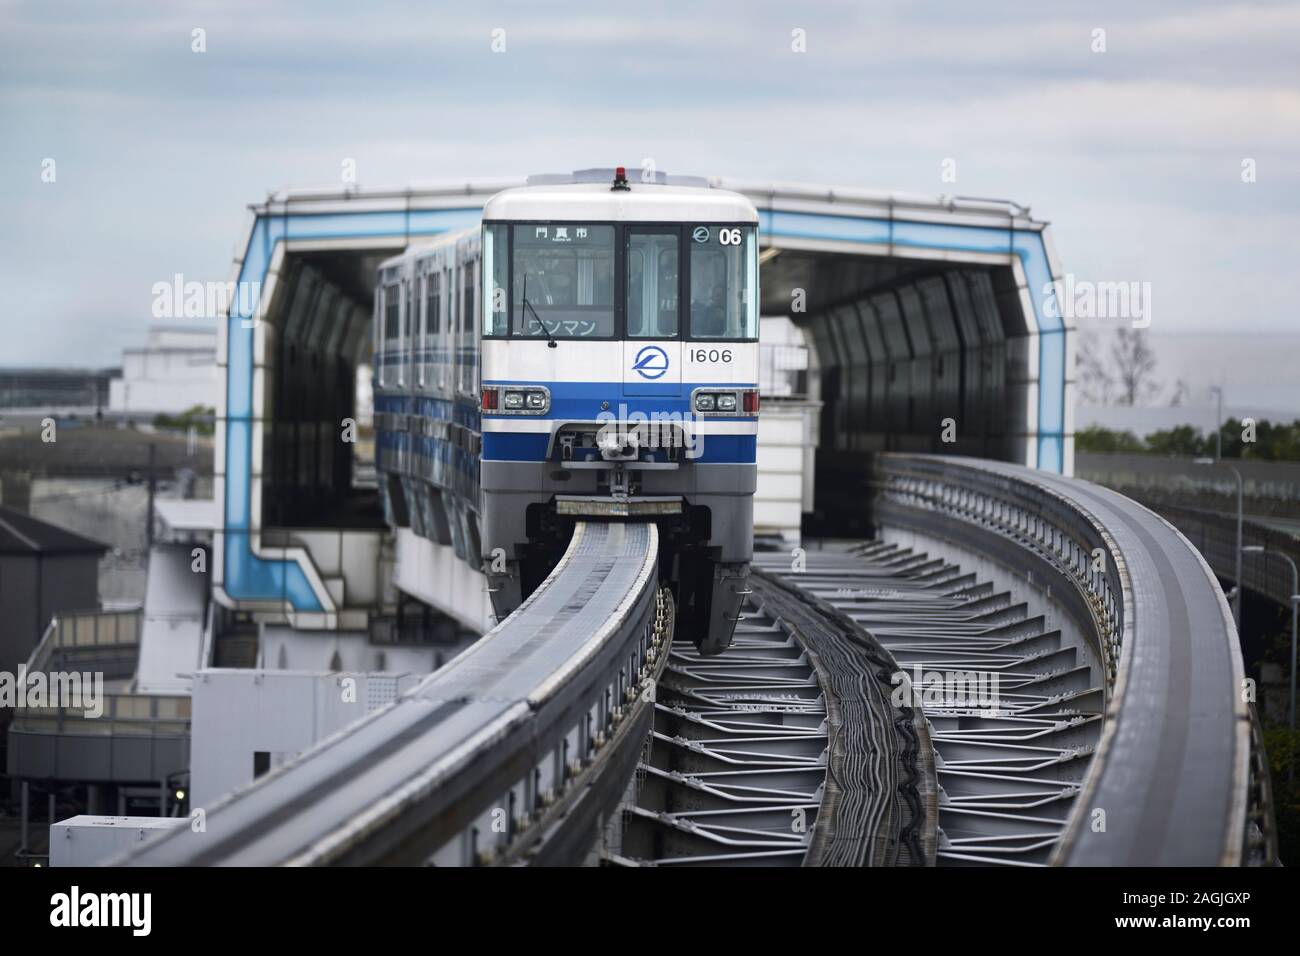 Osaka tren monorail partiendo desde una estación. El aeropuerto de la ciudad de Osaka. Osaka, Japón Foto de stock